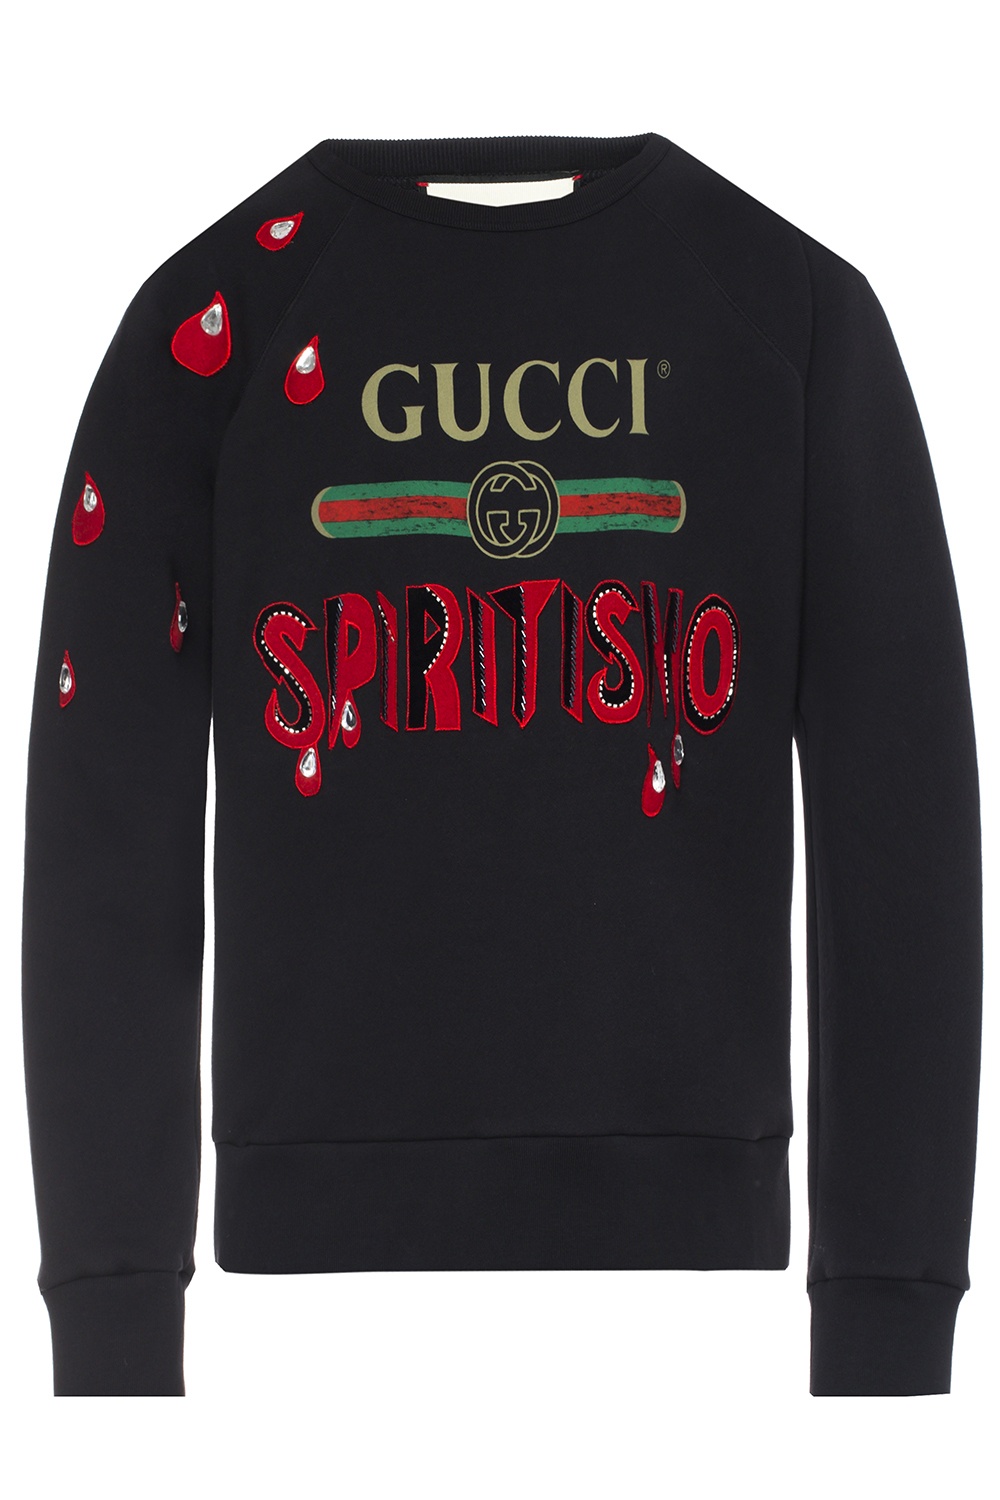 ydre produktion kutter Web' sweatshirt Gucci - Vitkac US